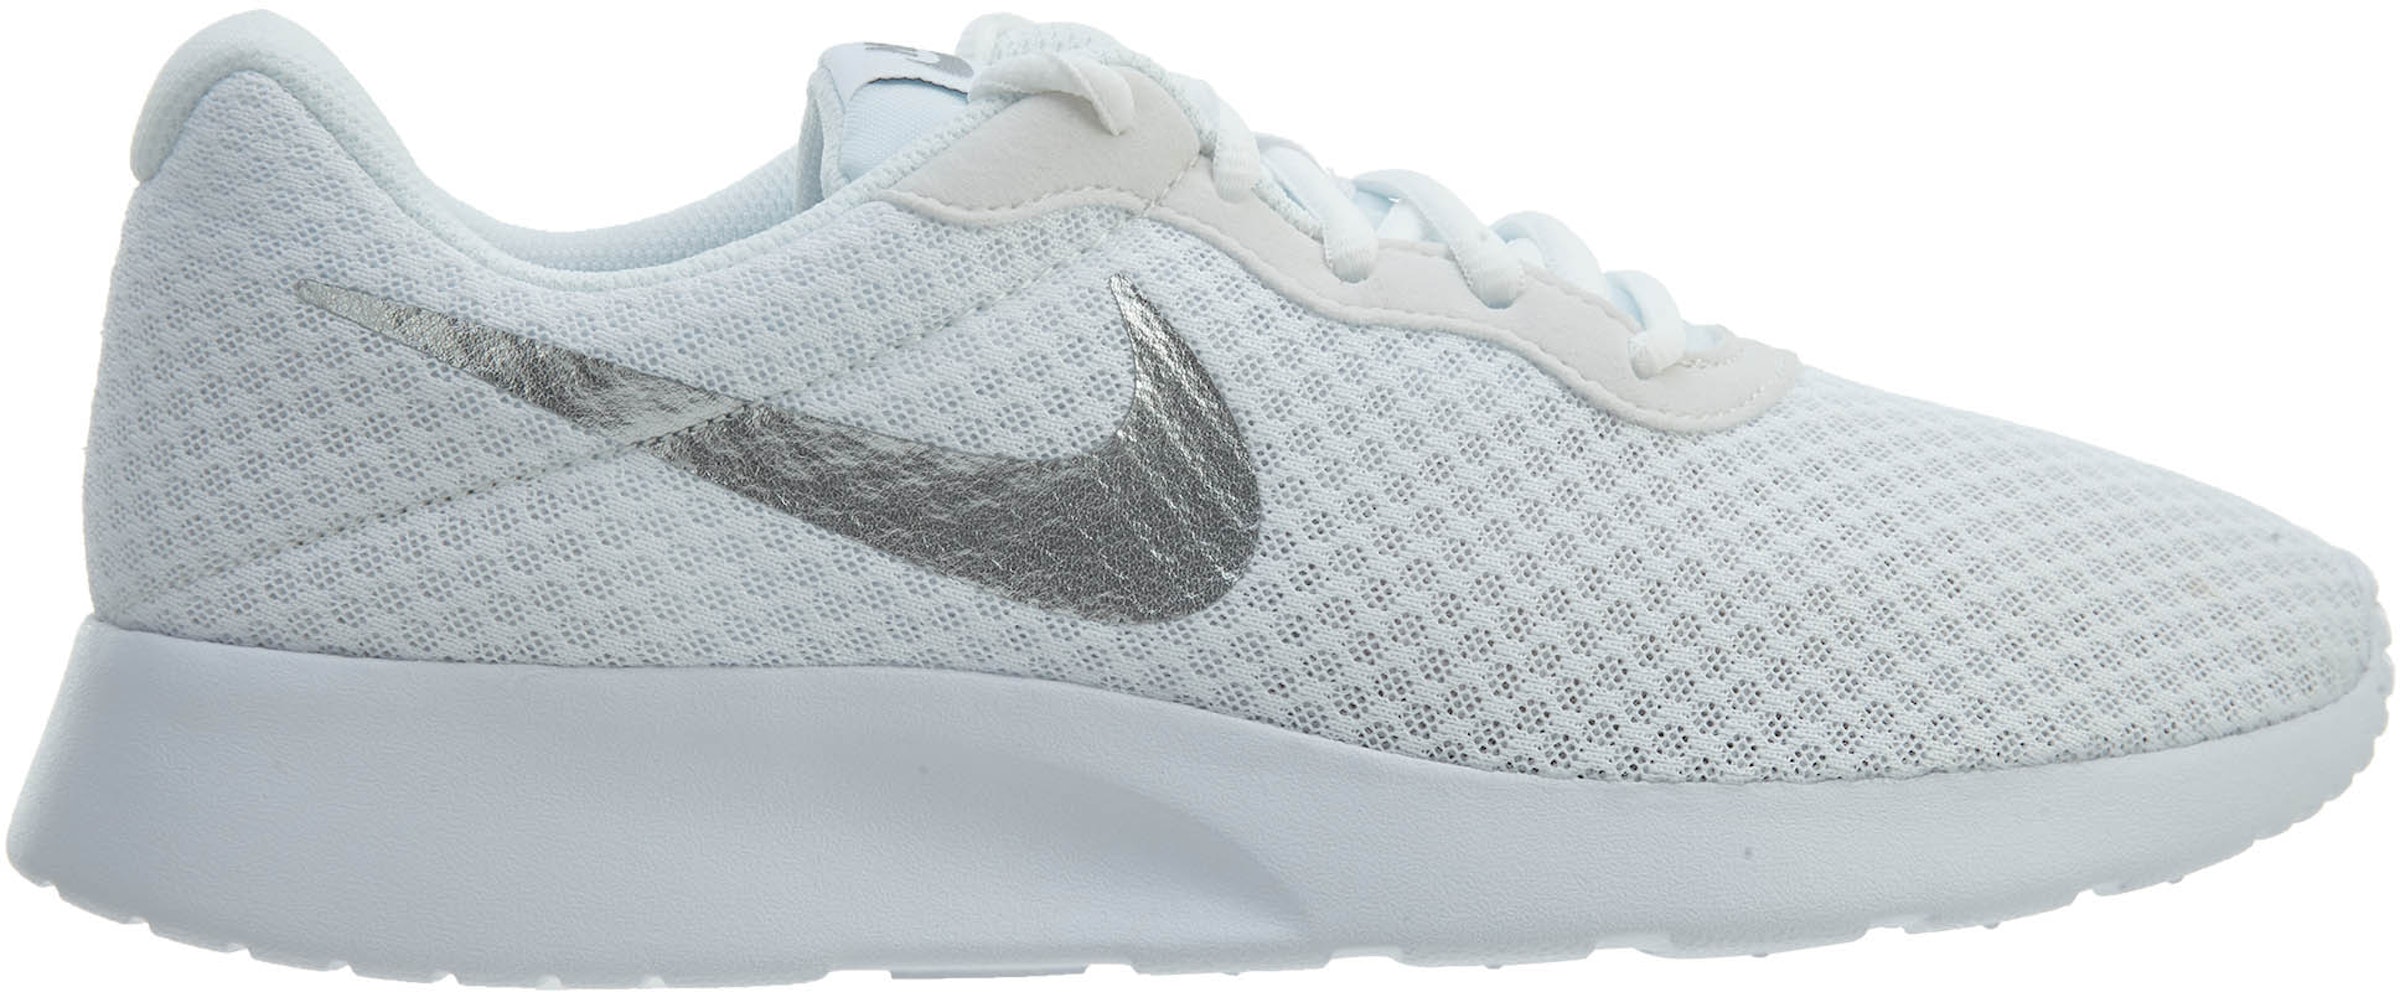 Nike Tanjun White Silver (Women's) - 812655-101 -